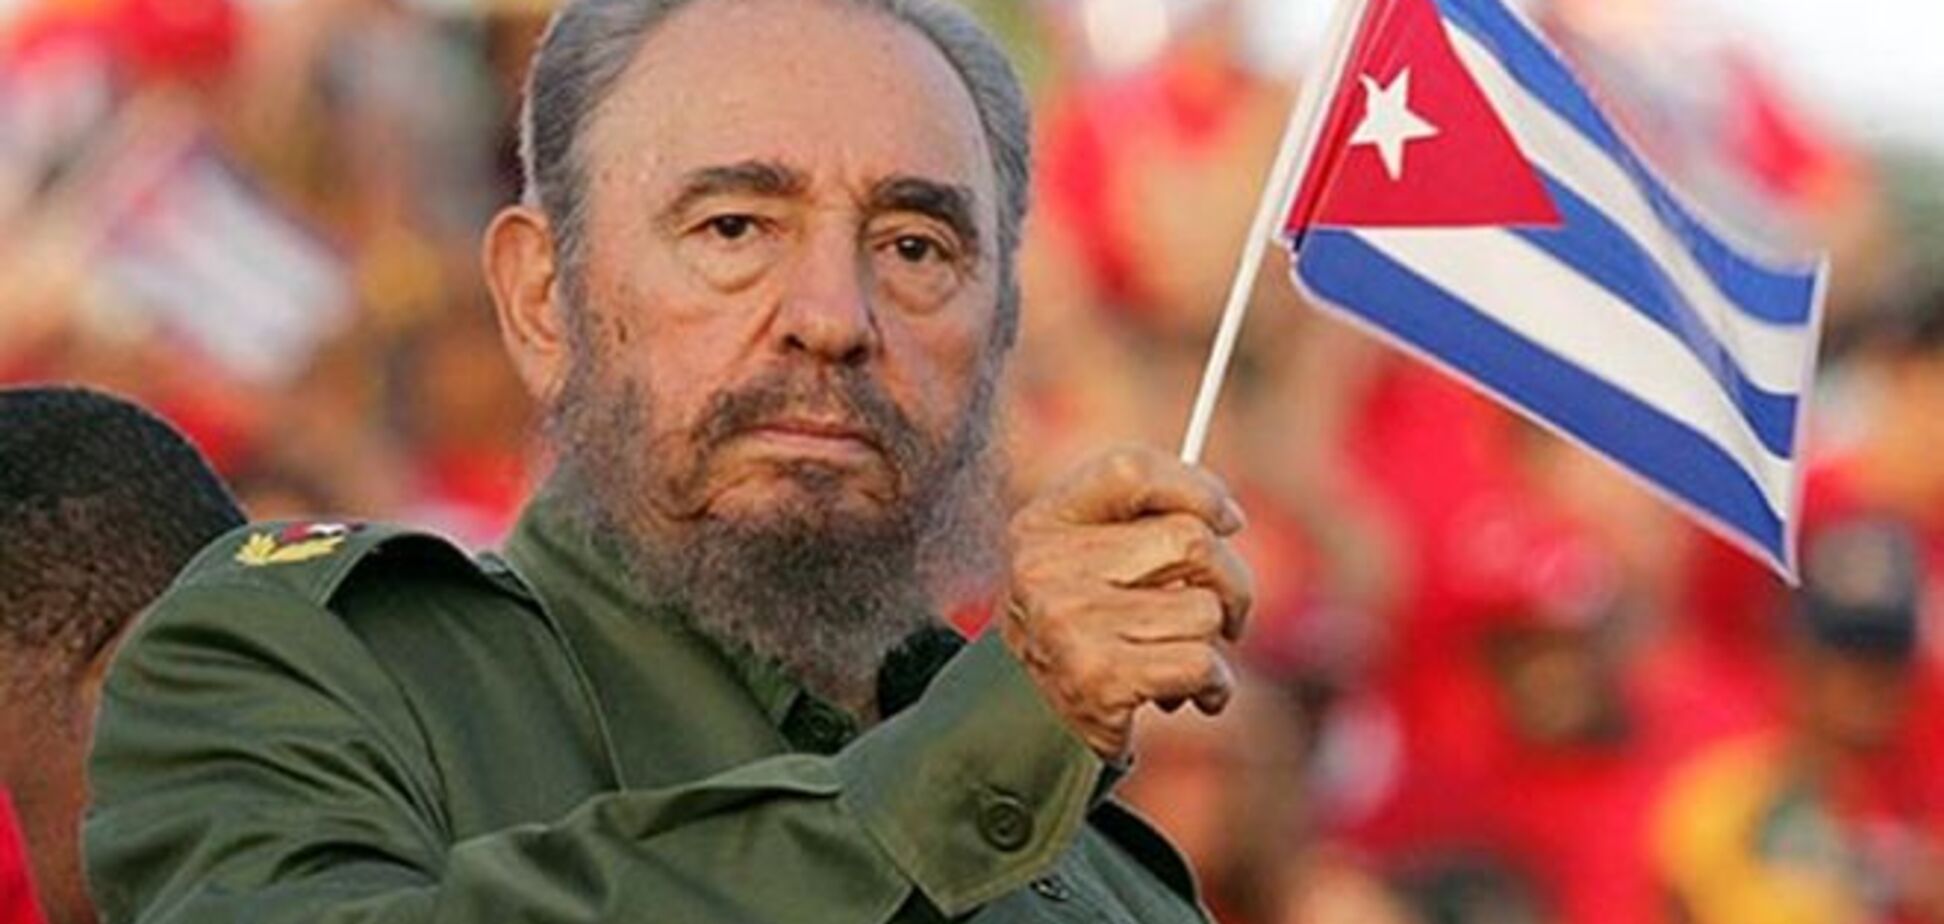 Фидель Кастро появился на публике впервые за последние месяцы